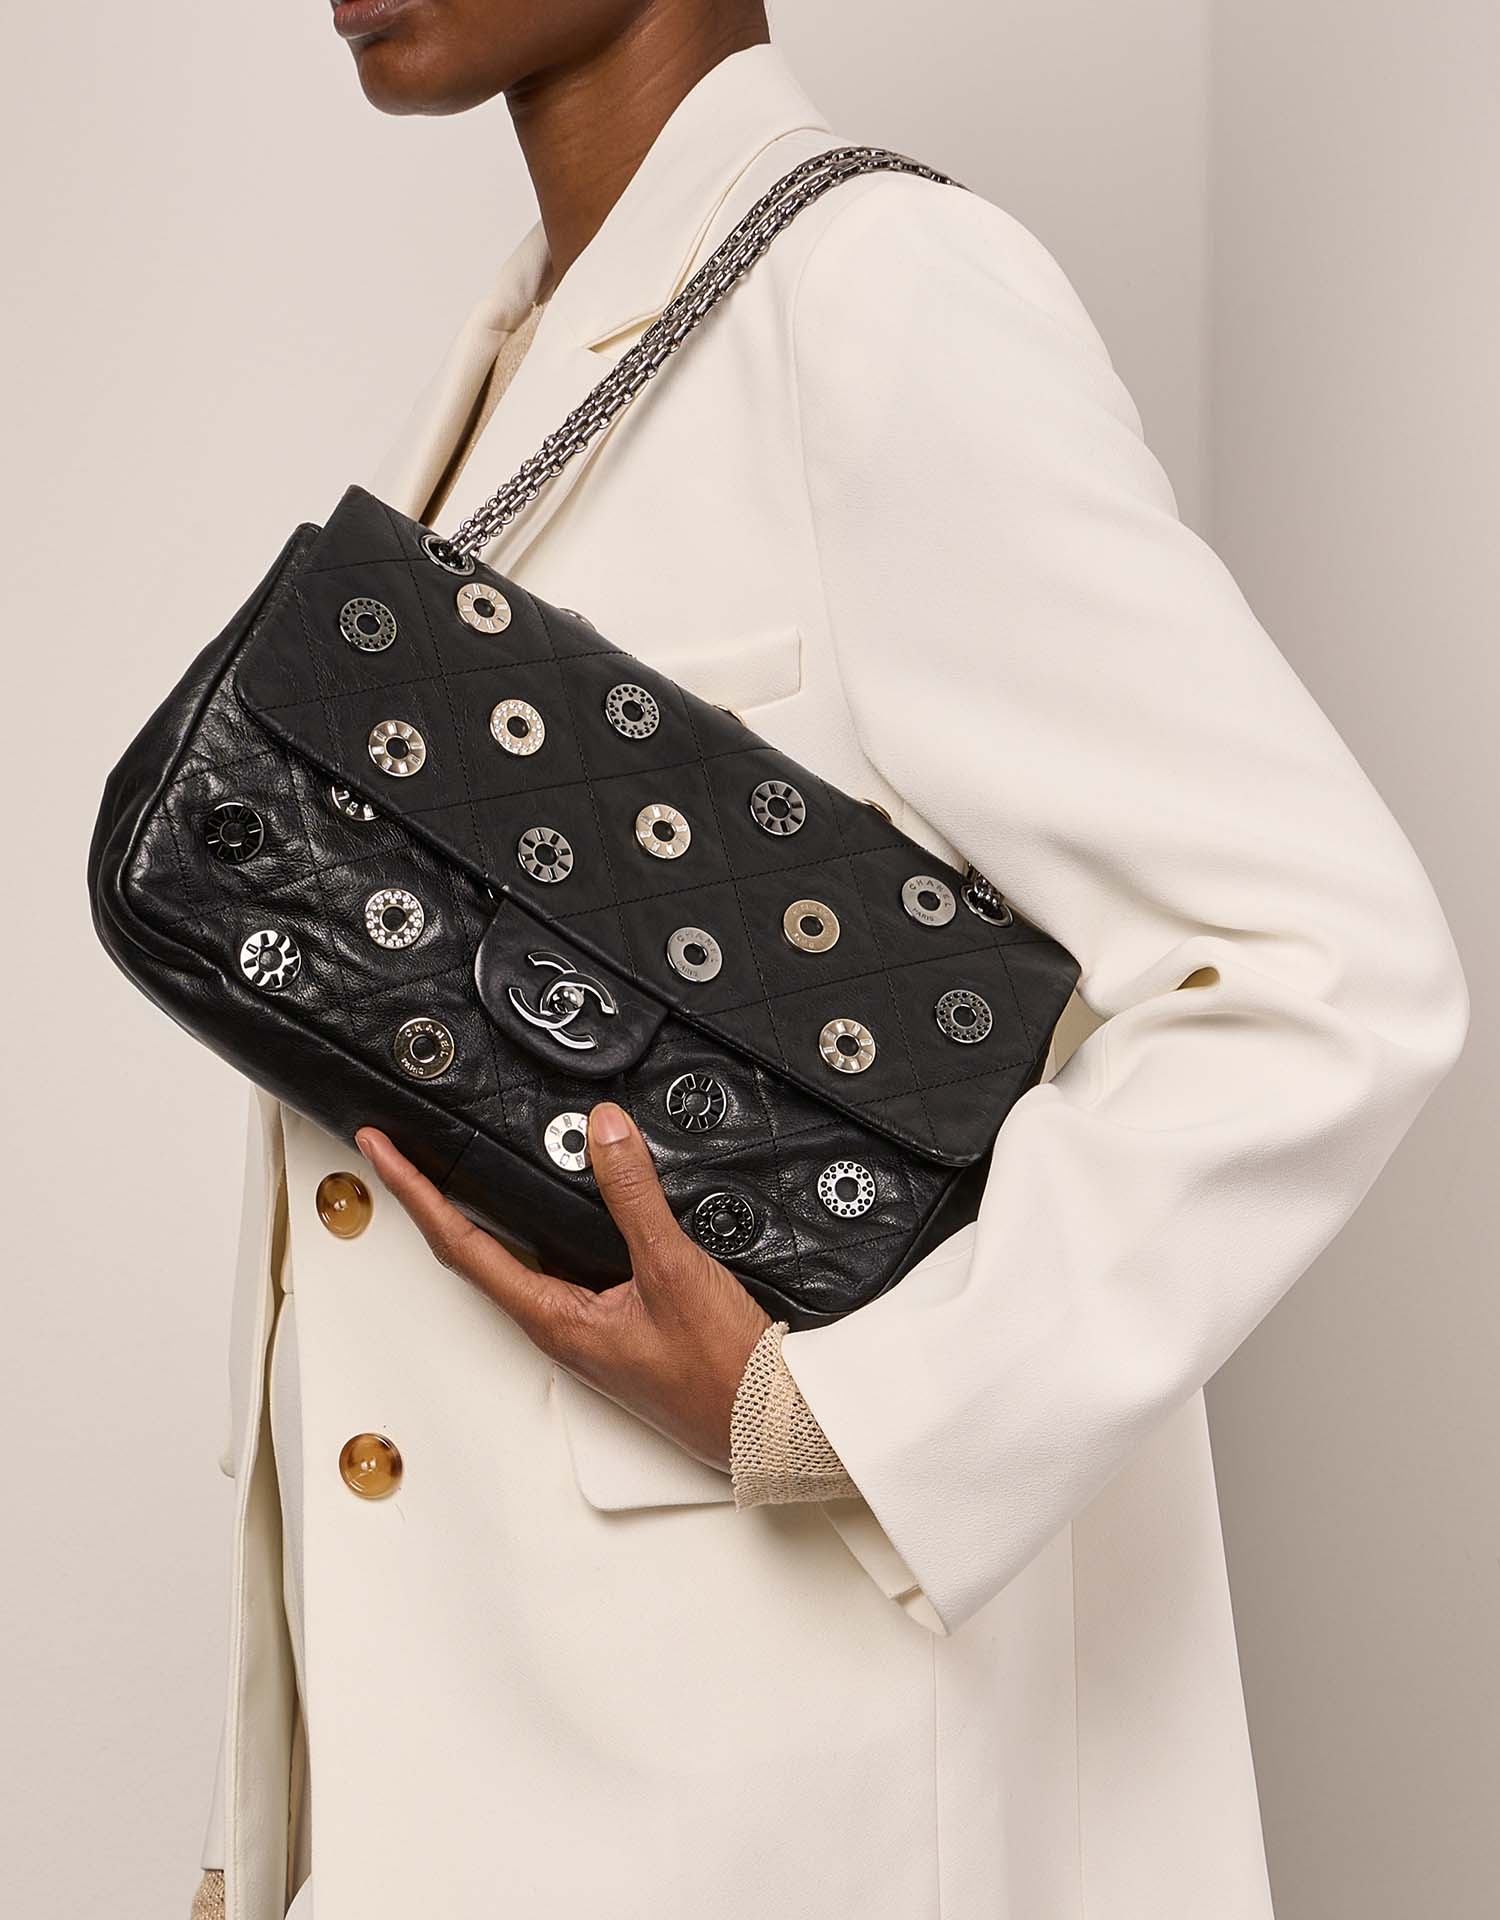 Pre-owned Chanel Tasche Timeless Medium Chevre Schwarz Schwarz Modell | Verkaufen Sie Ihre Designer-Tasche auf Saclab.com